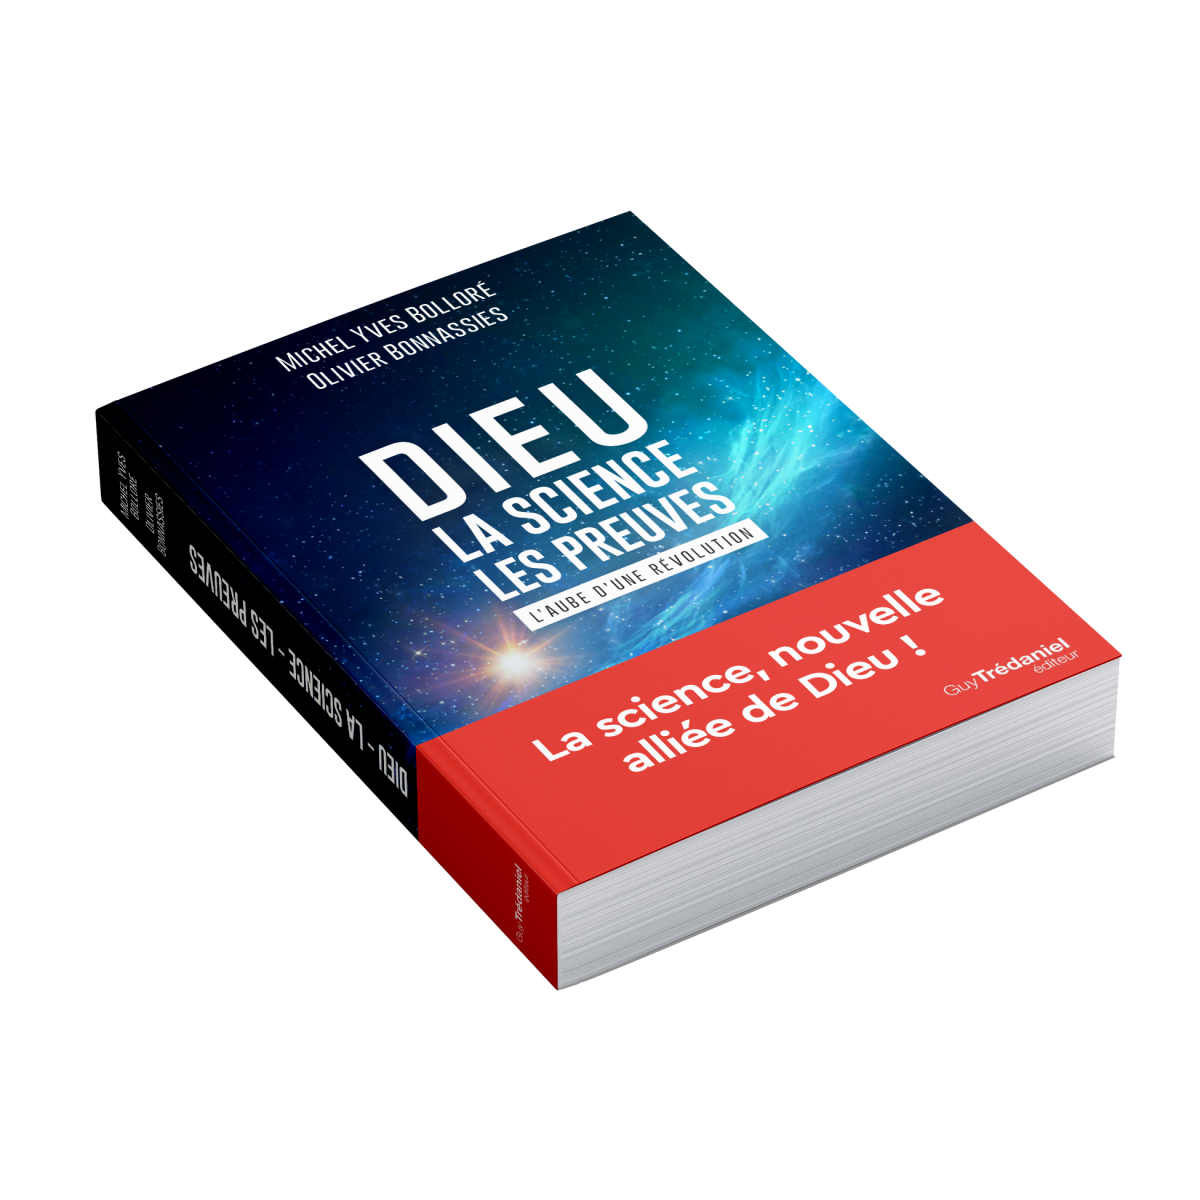  Franţa: O carte devenită bestseller pretinde că poate să dovedească existenţa lui Dumnezeu prin intermediul ştiinţei